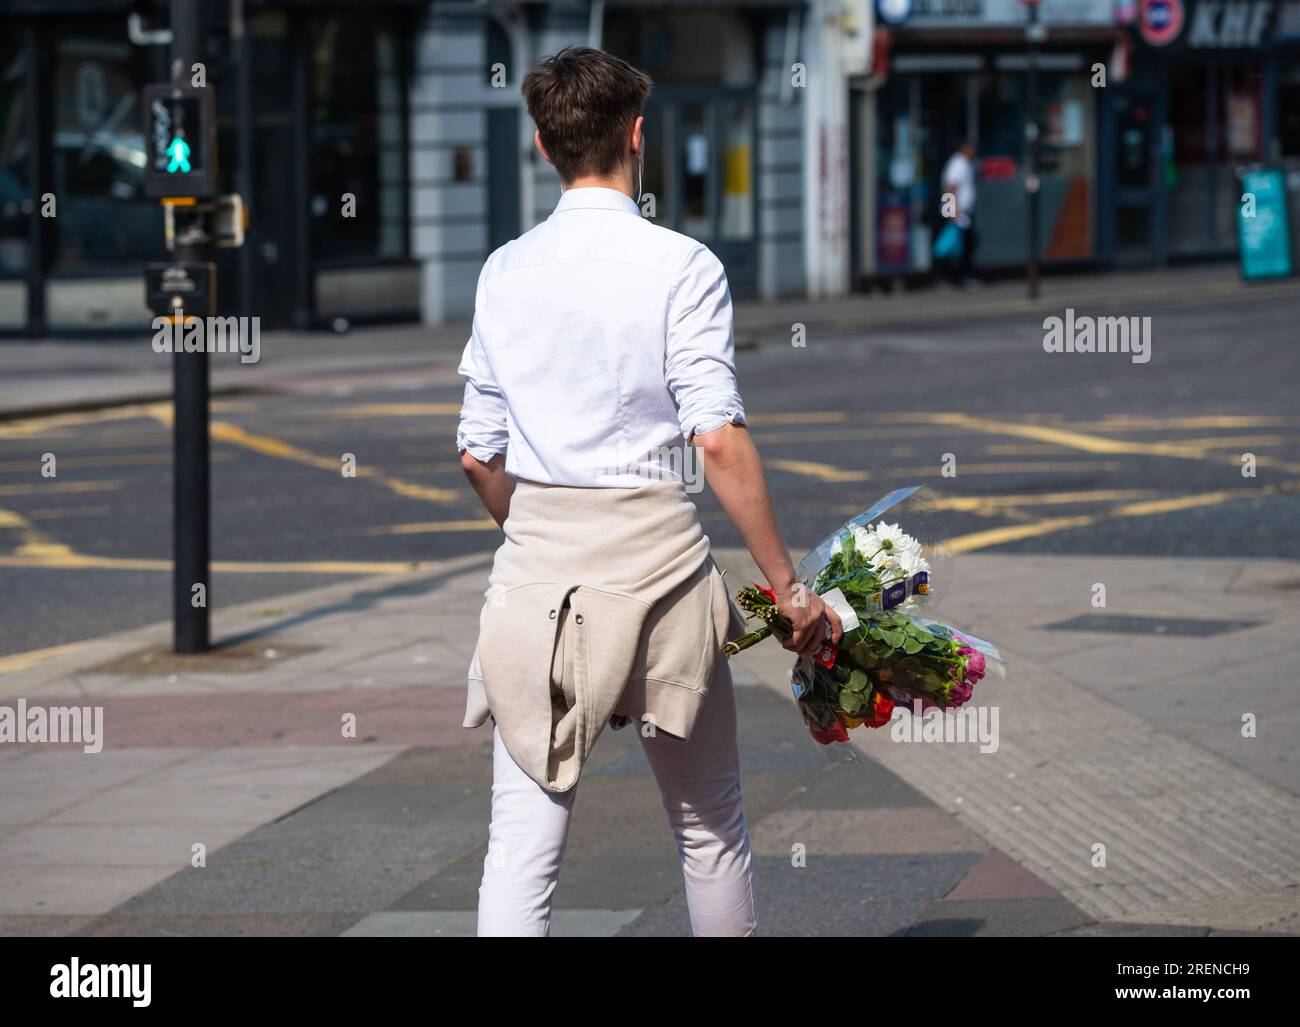 Jeune homme marchant, ville, été, portant, bouquet de fleurs, Angleterre, Royaume-Uni. Concept d'amour, concept romantique, romance, amour jeune. Bouquet de fleurs. Banque D'Images